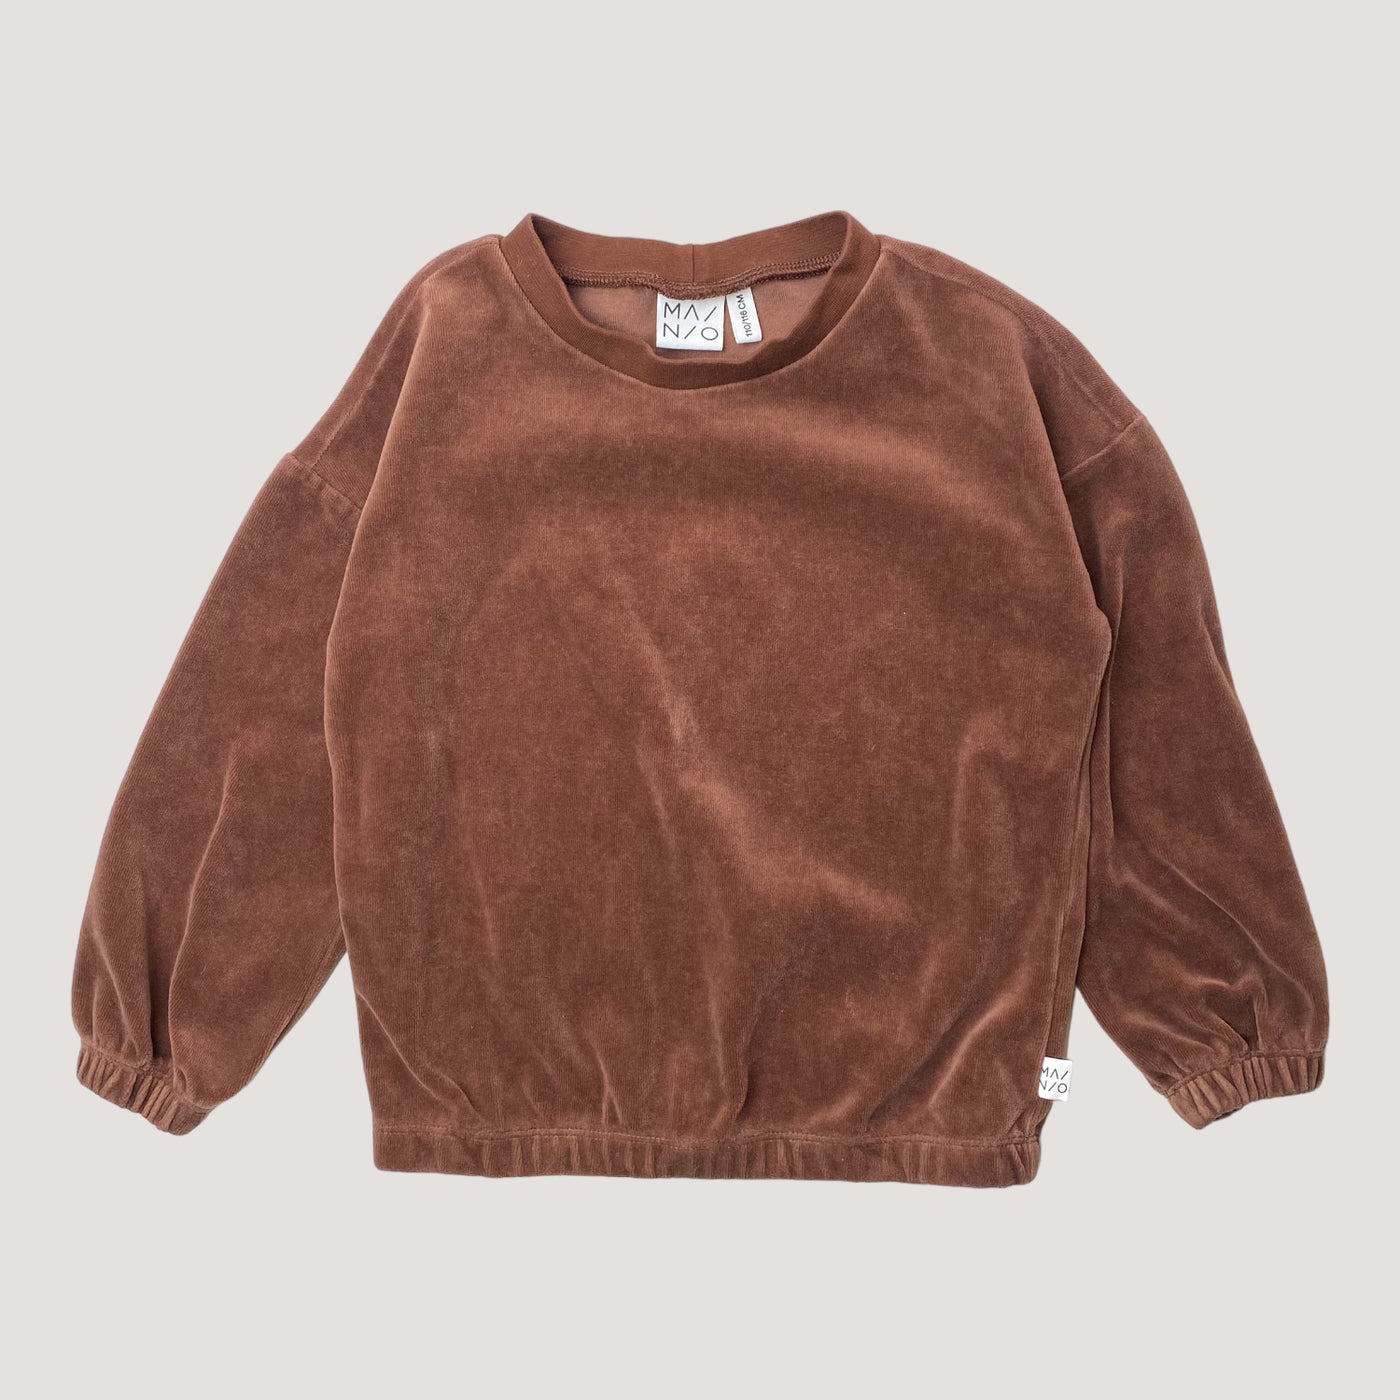 Mainio velour shirt, brown sugar | 110/116cm